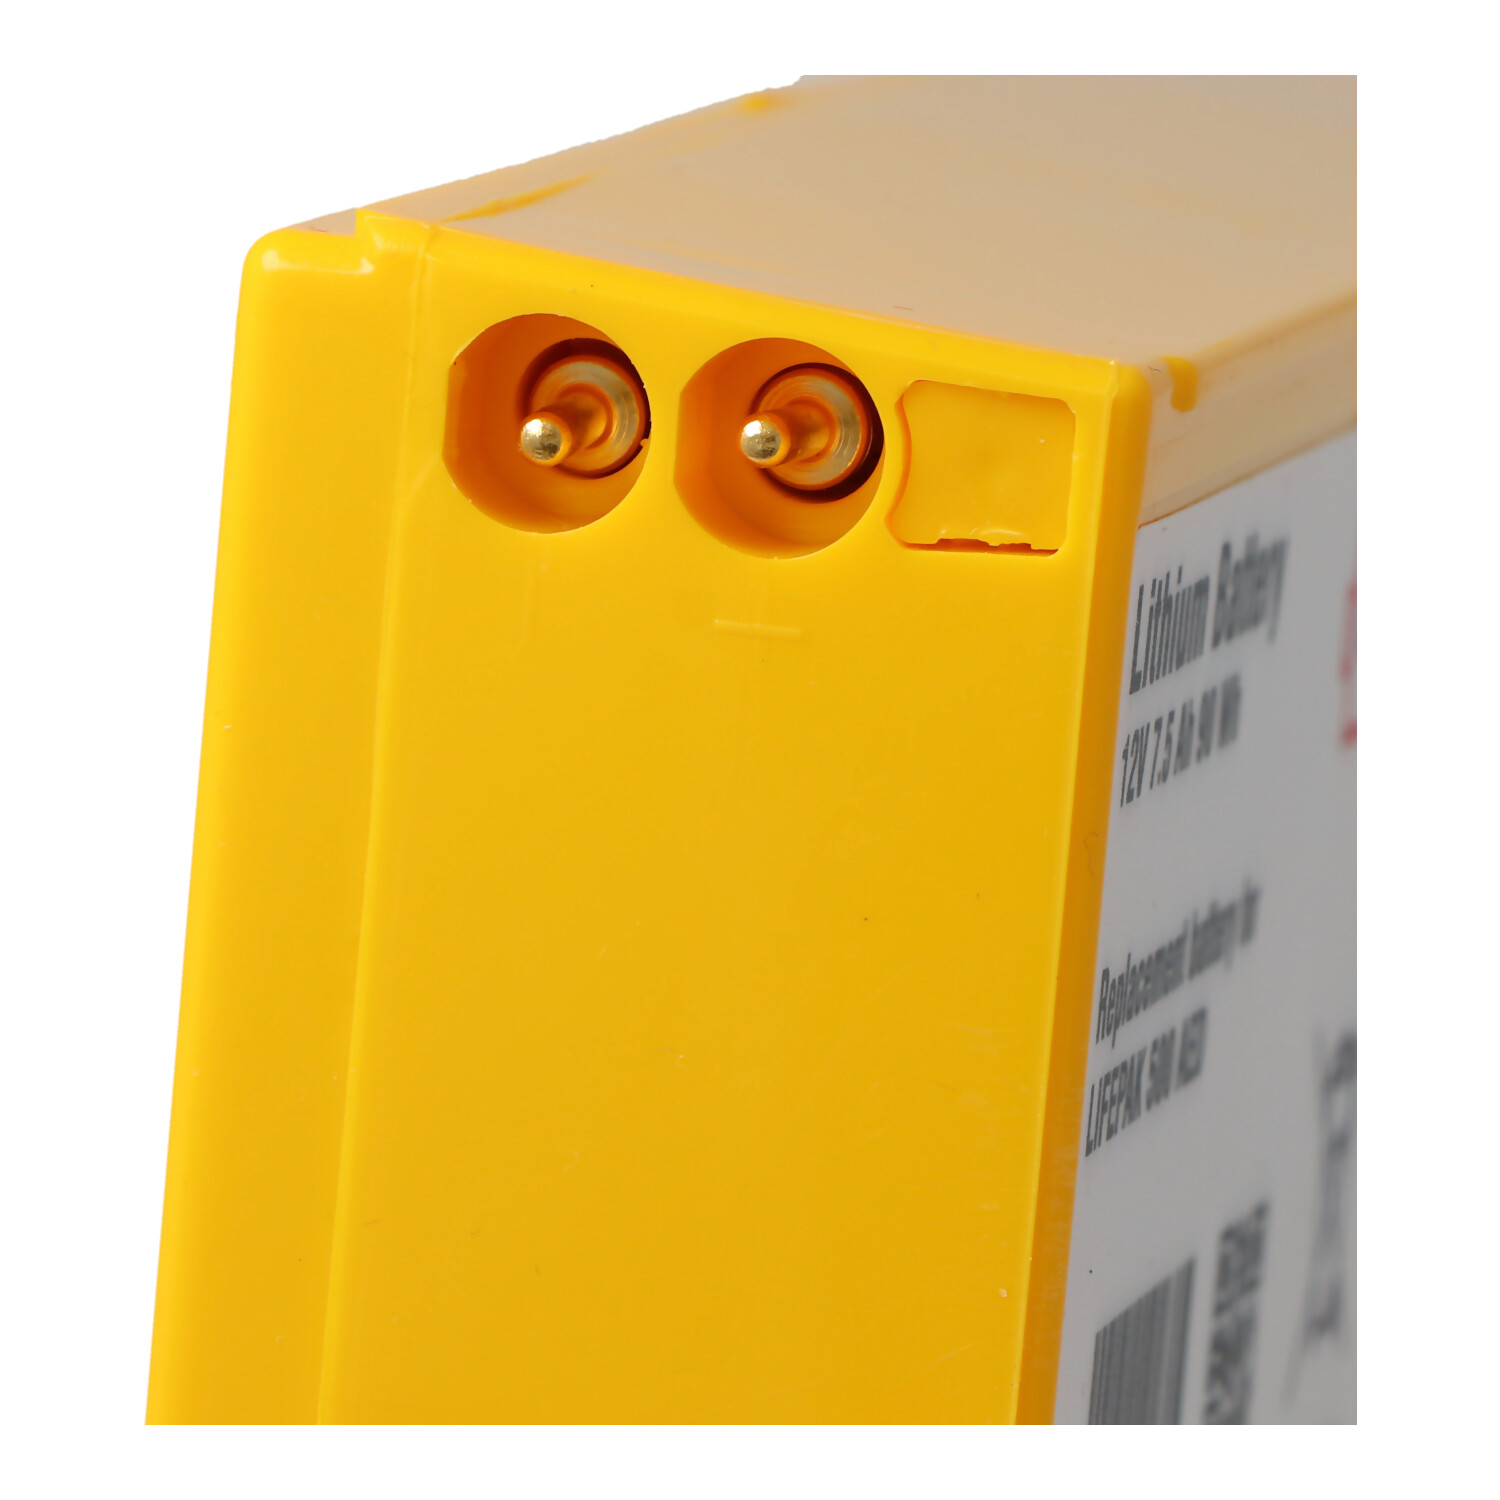 Lithiumbatterie passend für Physio Control Defibrillator Lifepak 500 - 300-5380-030, 11141-000016